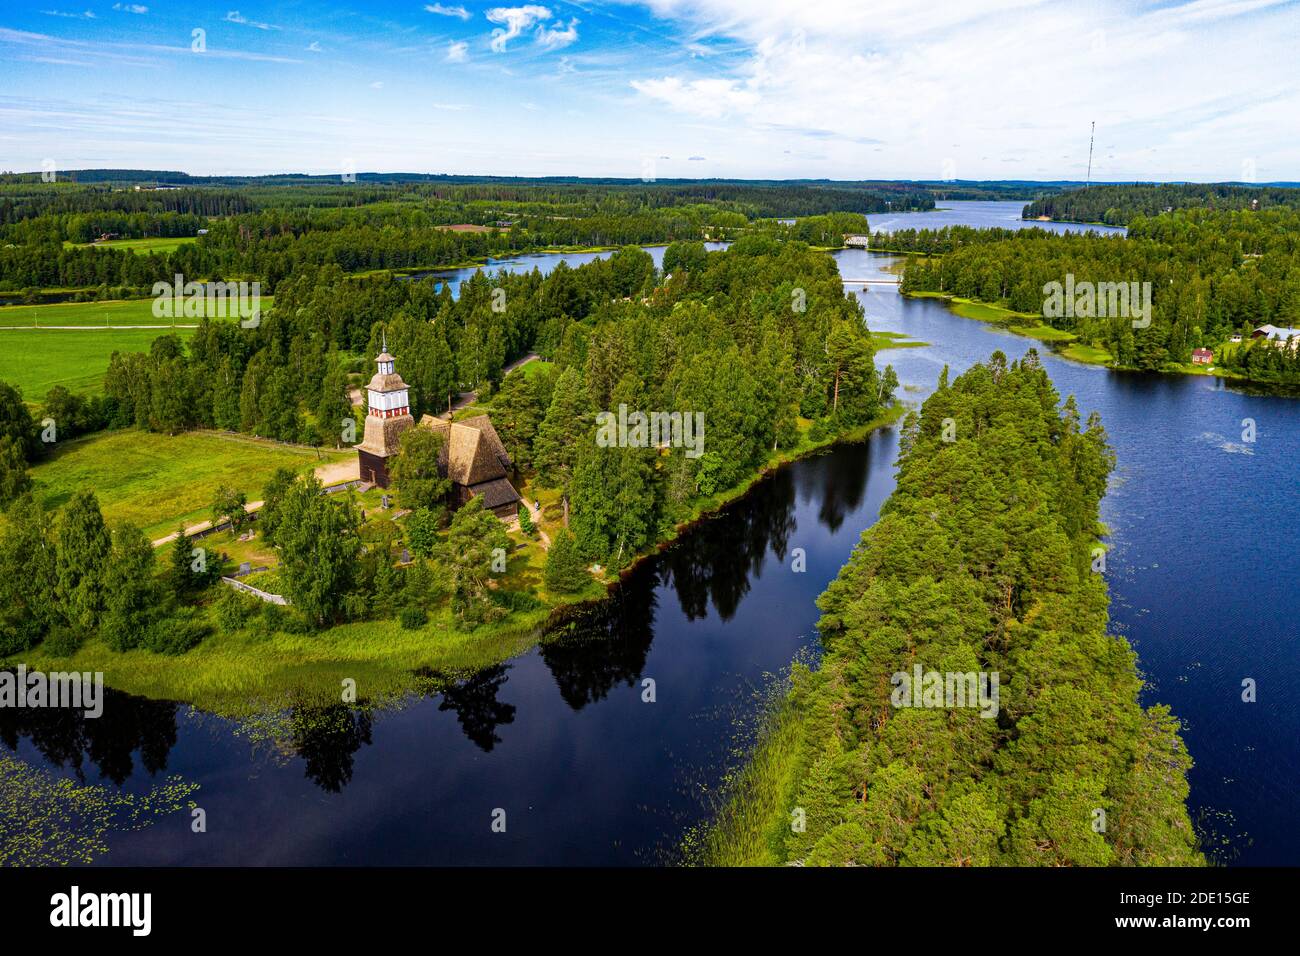 Vista aerea di Petaejeveden (Petajavesi), tra cui la Chiesa Vecchia, Patrimonio dell'Umanità dell'UNESCO, Finlandia, Europa Foto Stock